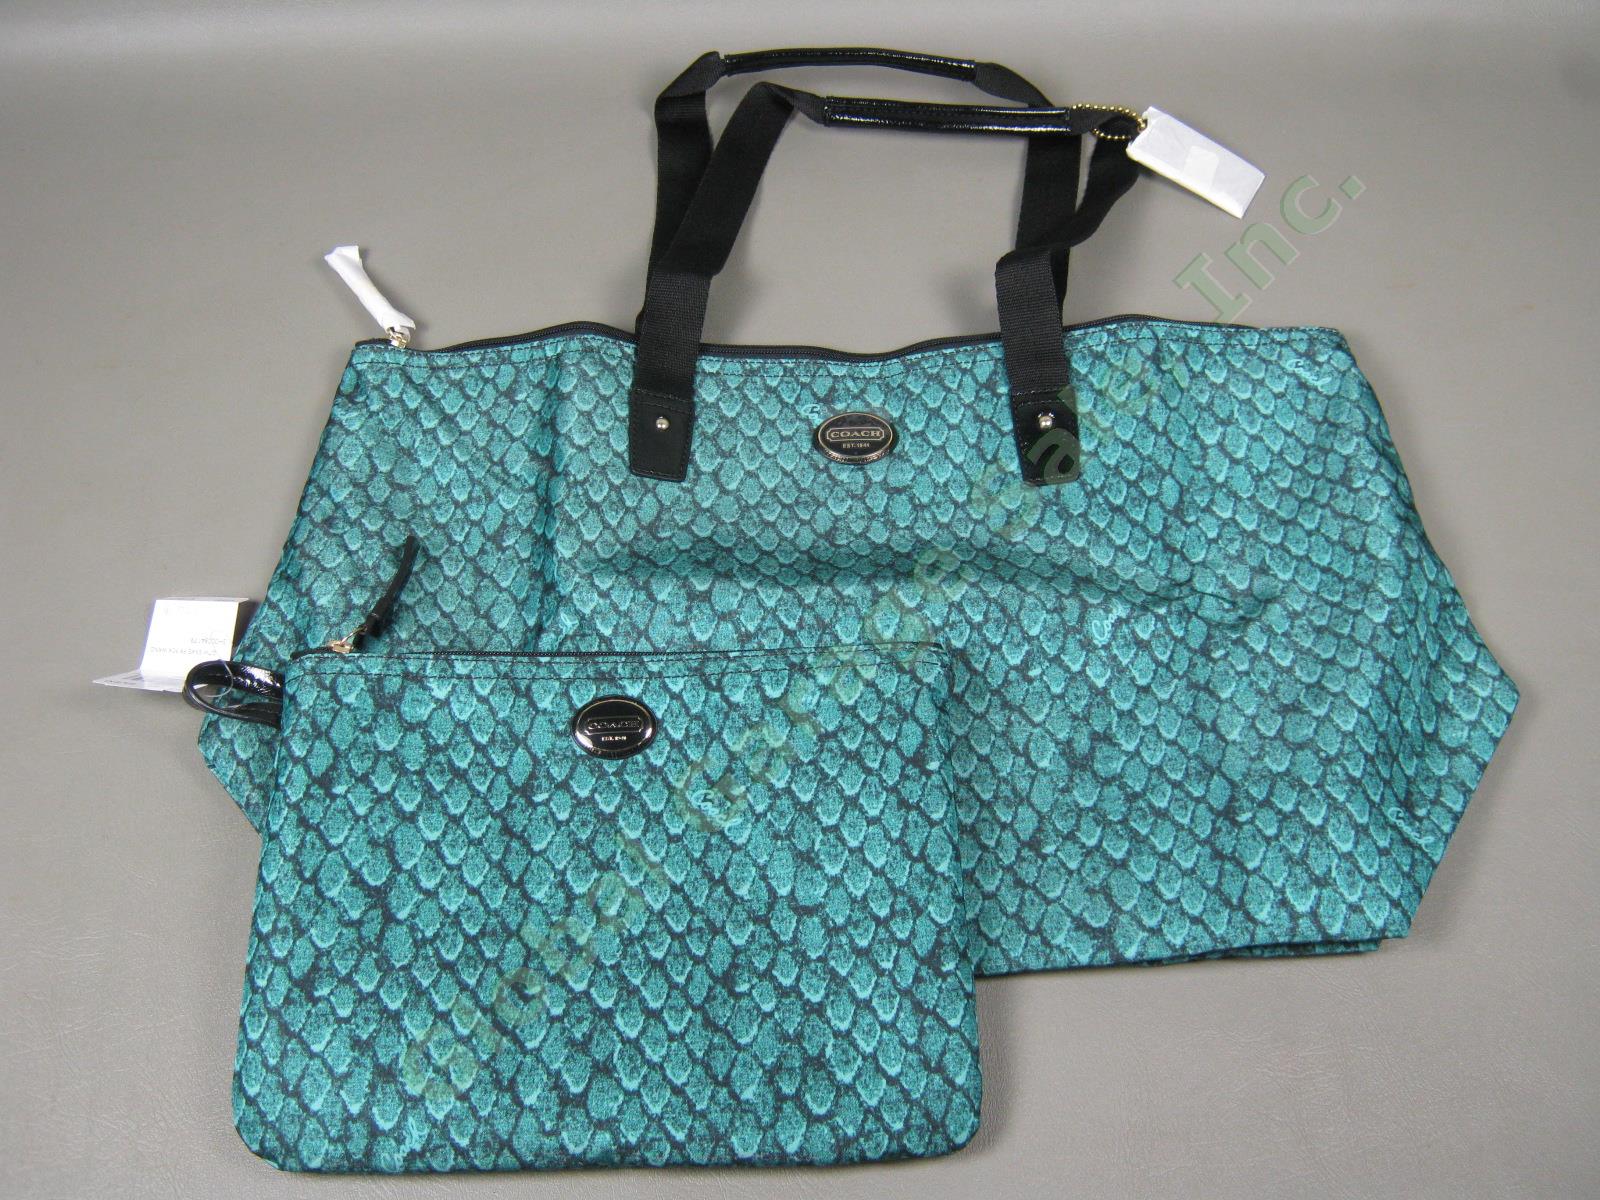 NWT Coach Emerald Getaway Snake Print Weekender Packable Travel Tote Bag $148 NR